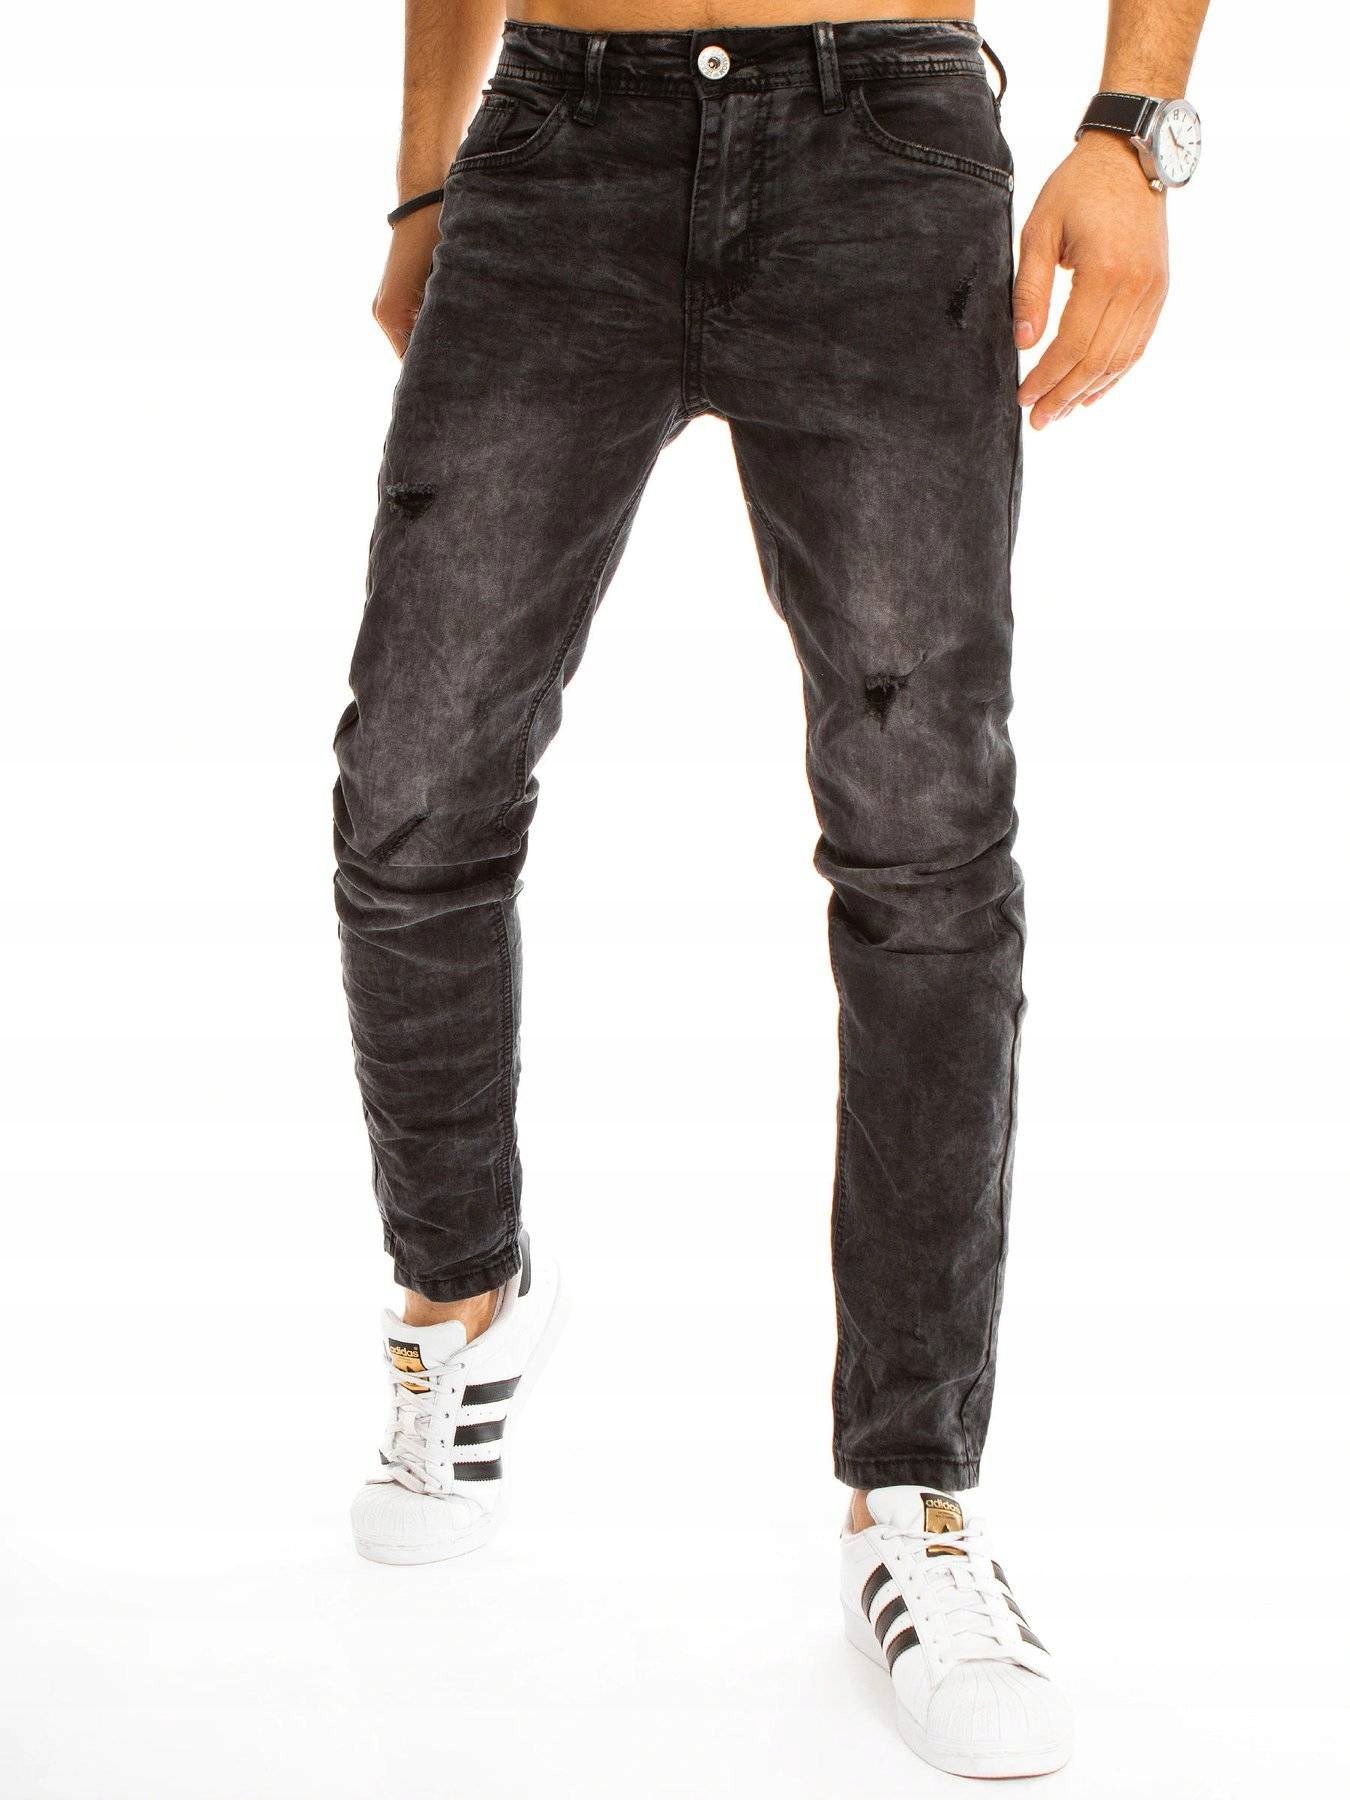 Мужские джинсовые штаны Black UX3211 - 32